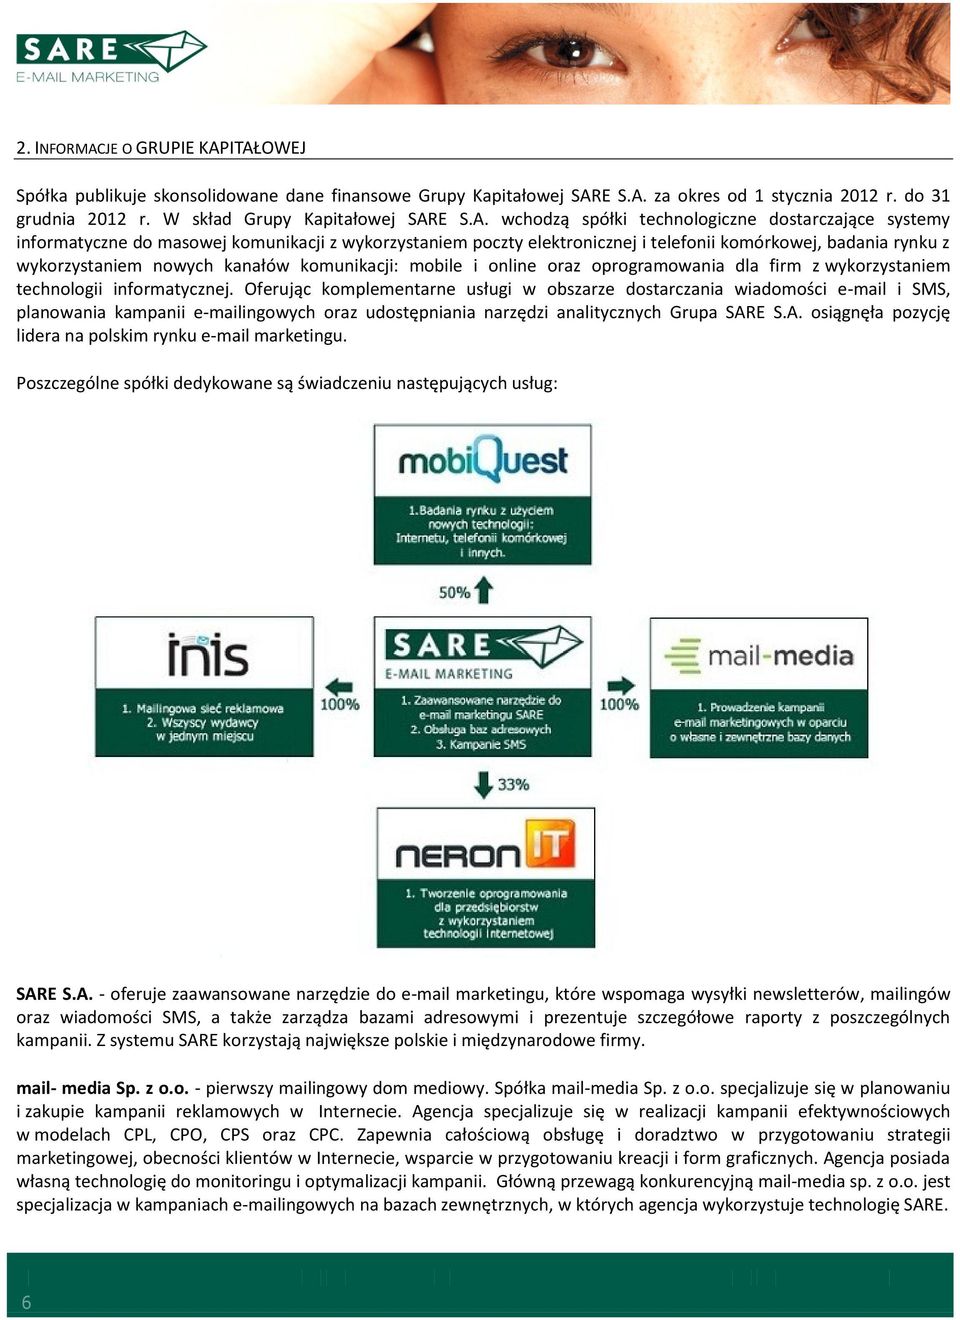 ITAŁOWEJ Spółka publikuje skonsolidowane dane finansowe Grupy Kapitałowej SARE S.A. za okres od 1 stycznia 2012 r. do 31 grudnia 2012 r. W skład Grupy Kapitałowej SARE S.A. wchodzą spółki